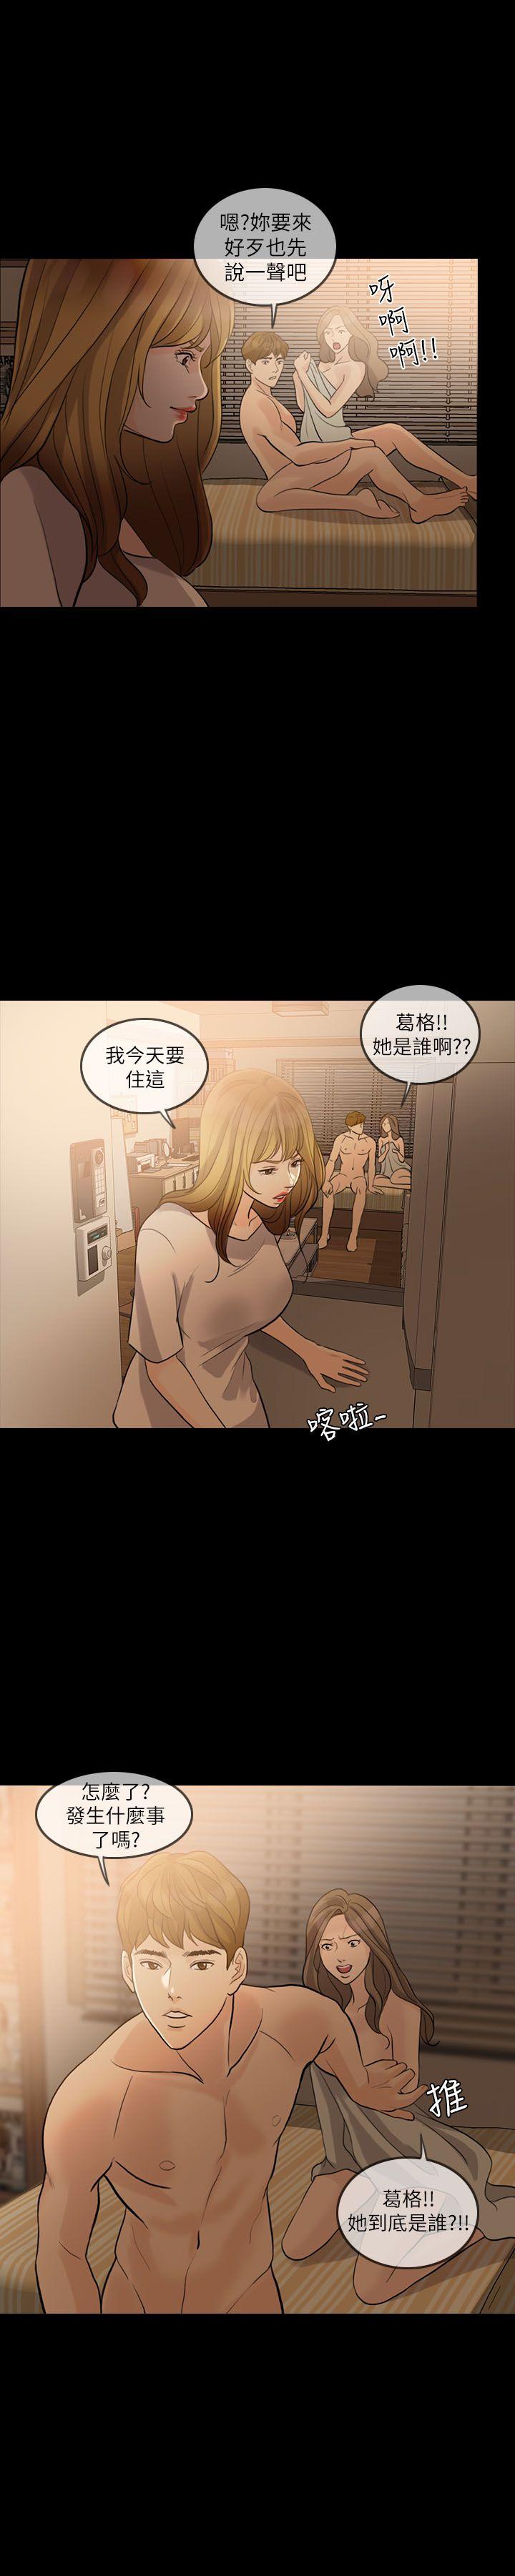 韩国污漫画 失控的愛 第10话 2